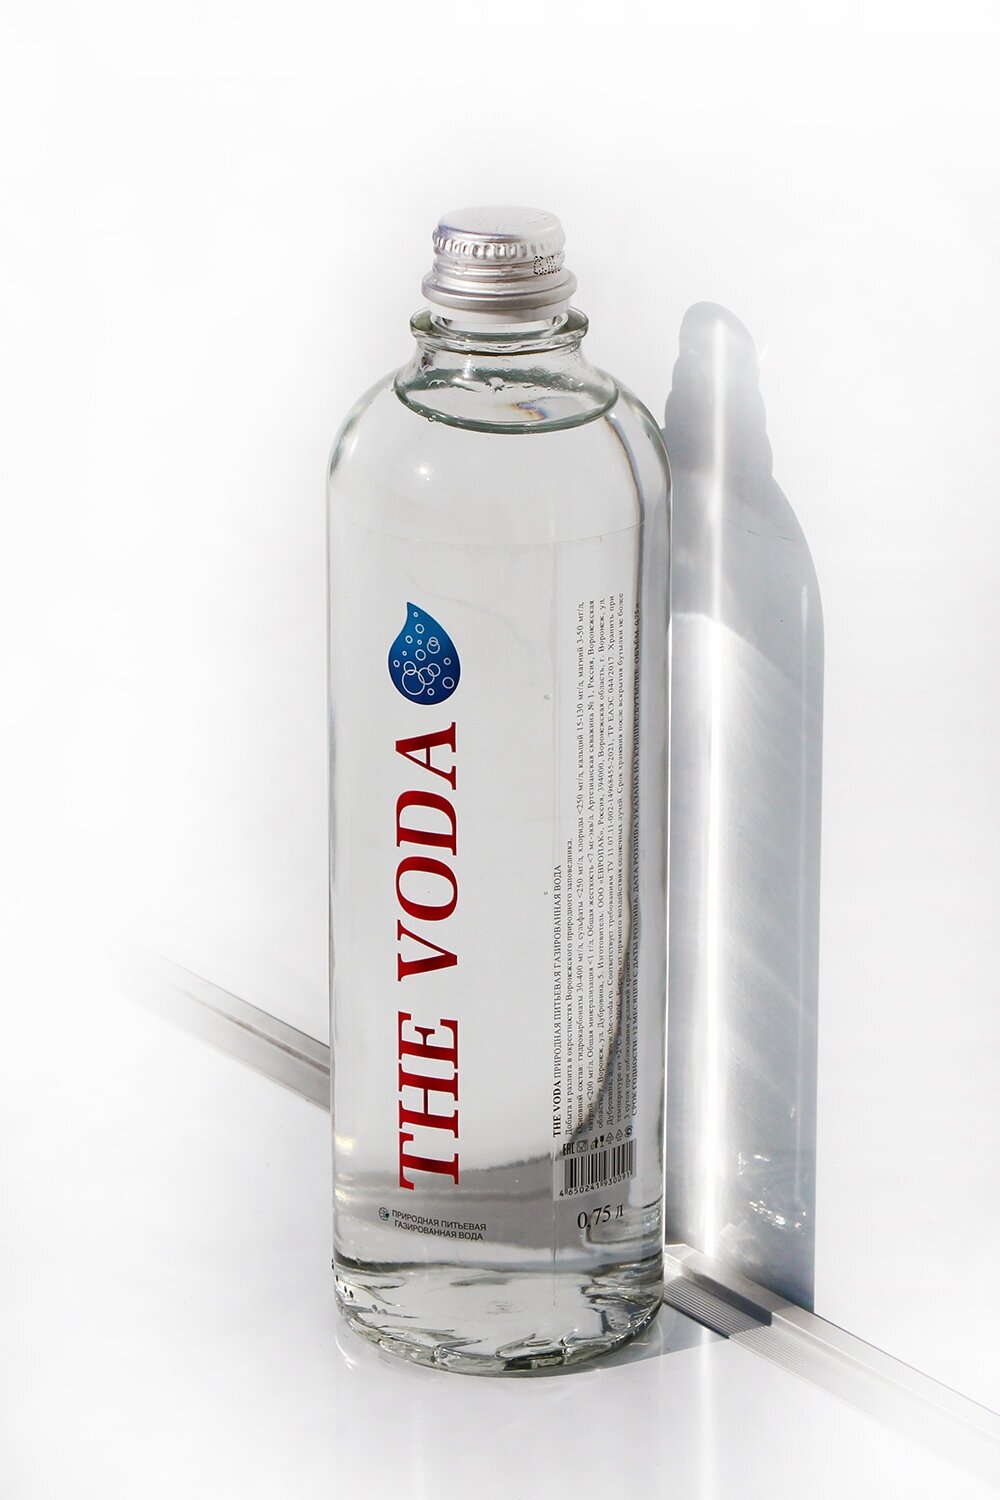 Вода природная питьевая THE VODA газированная, стекло, 6 шт. по 0,75 л